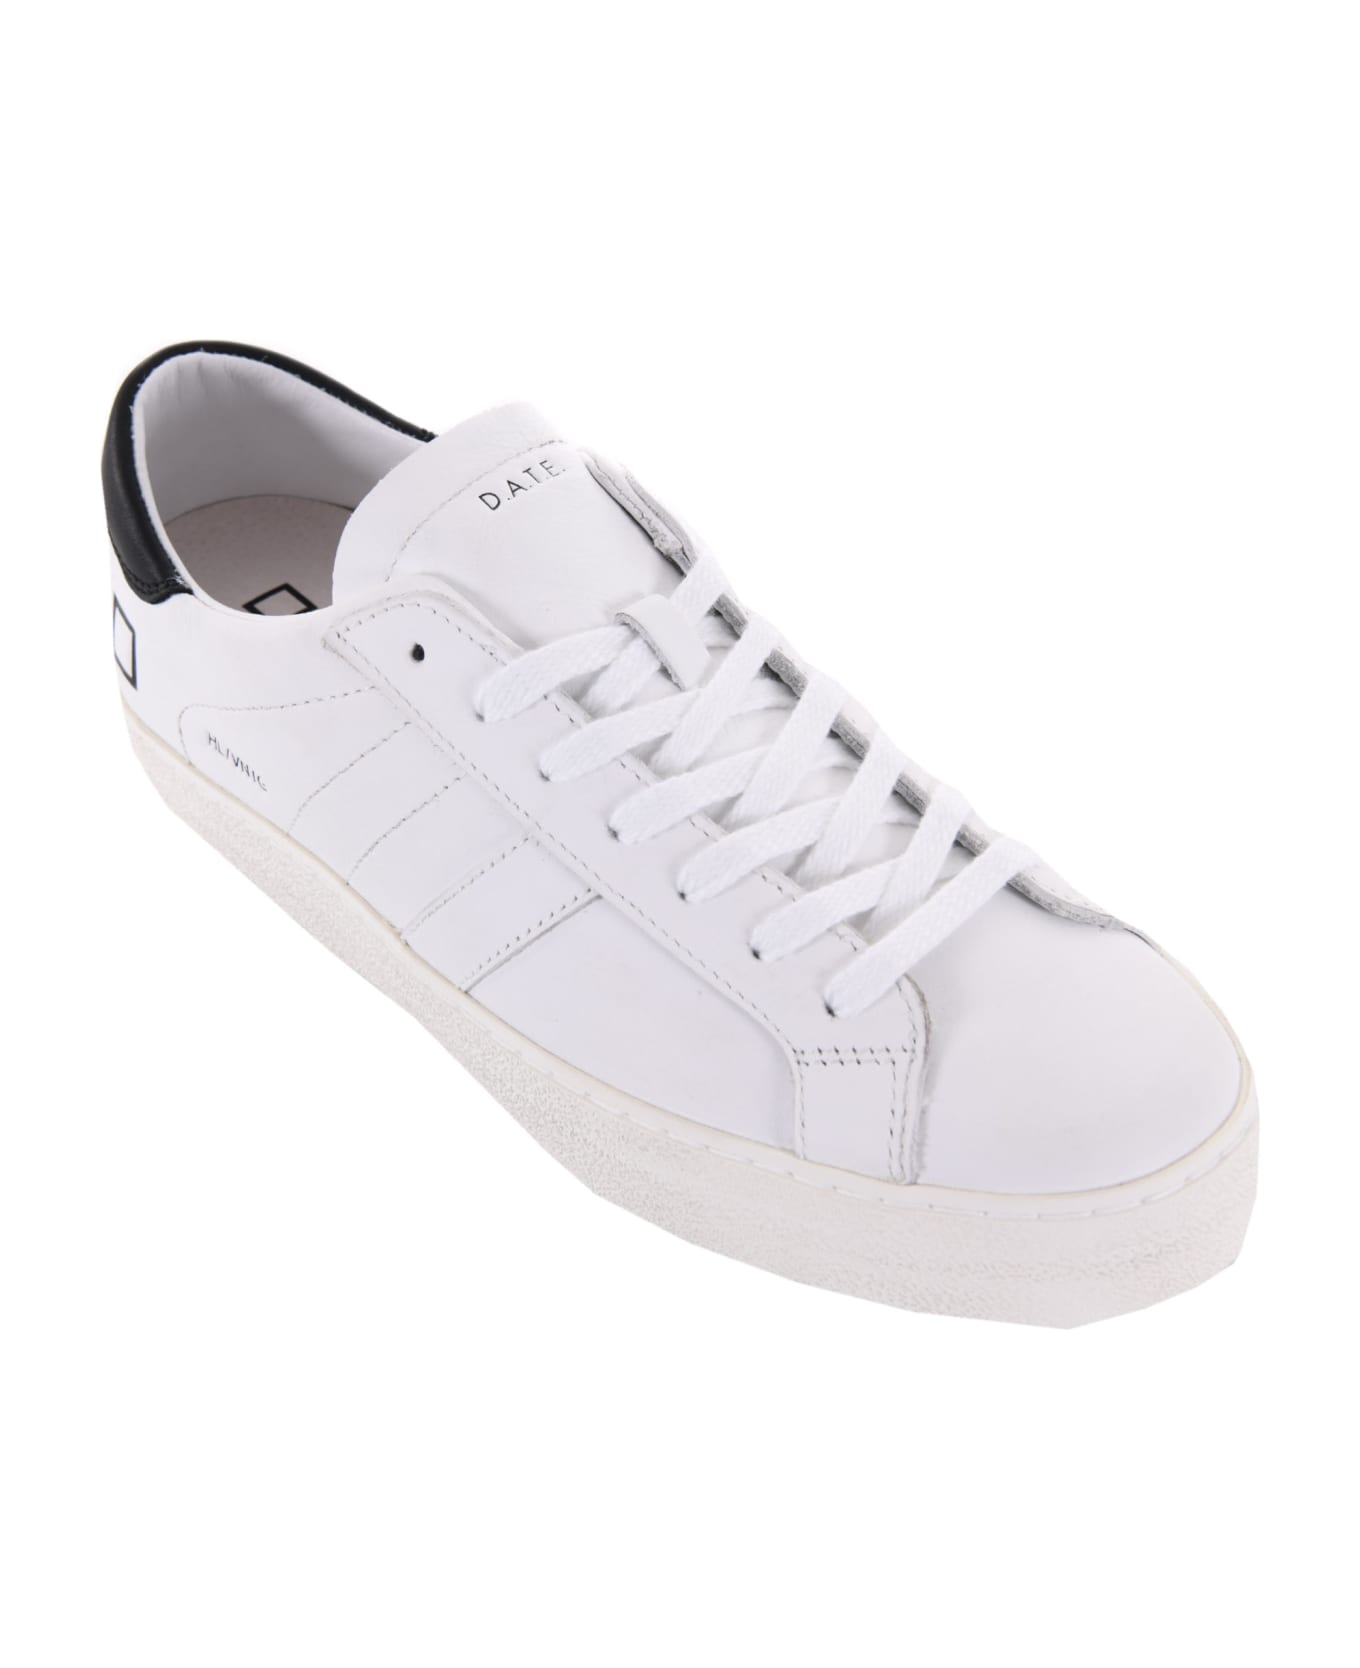 D.A.T.E. Men's Sneakers Leather. - Bianco/nero